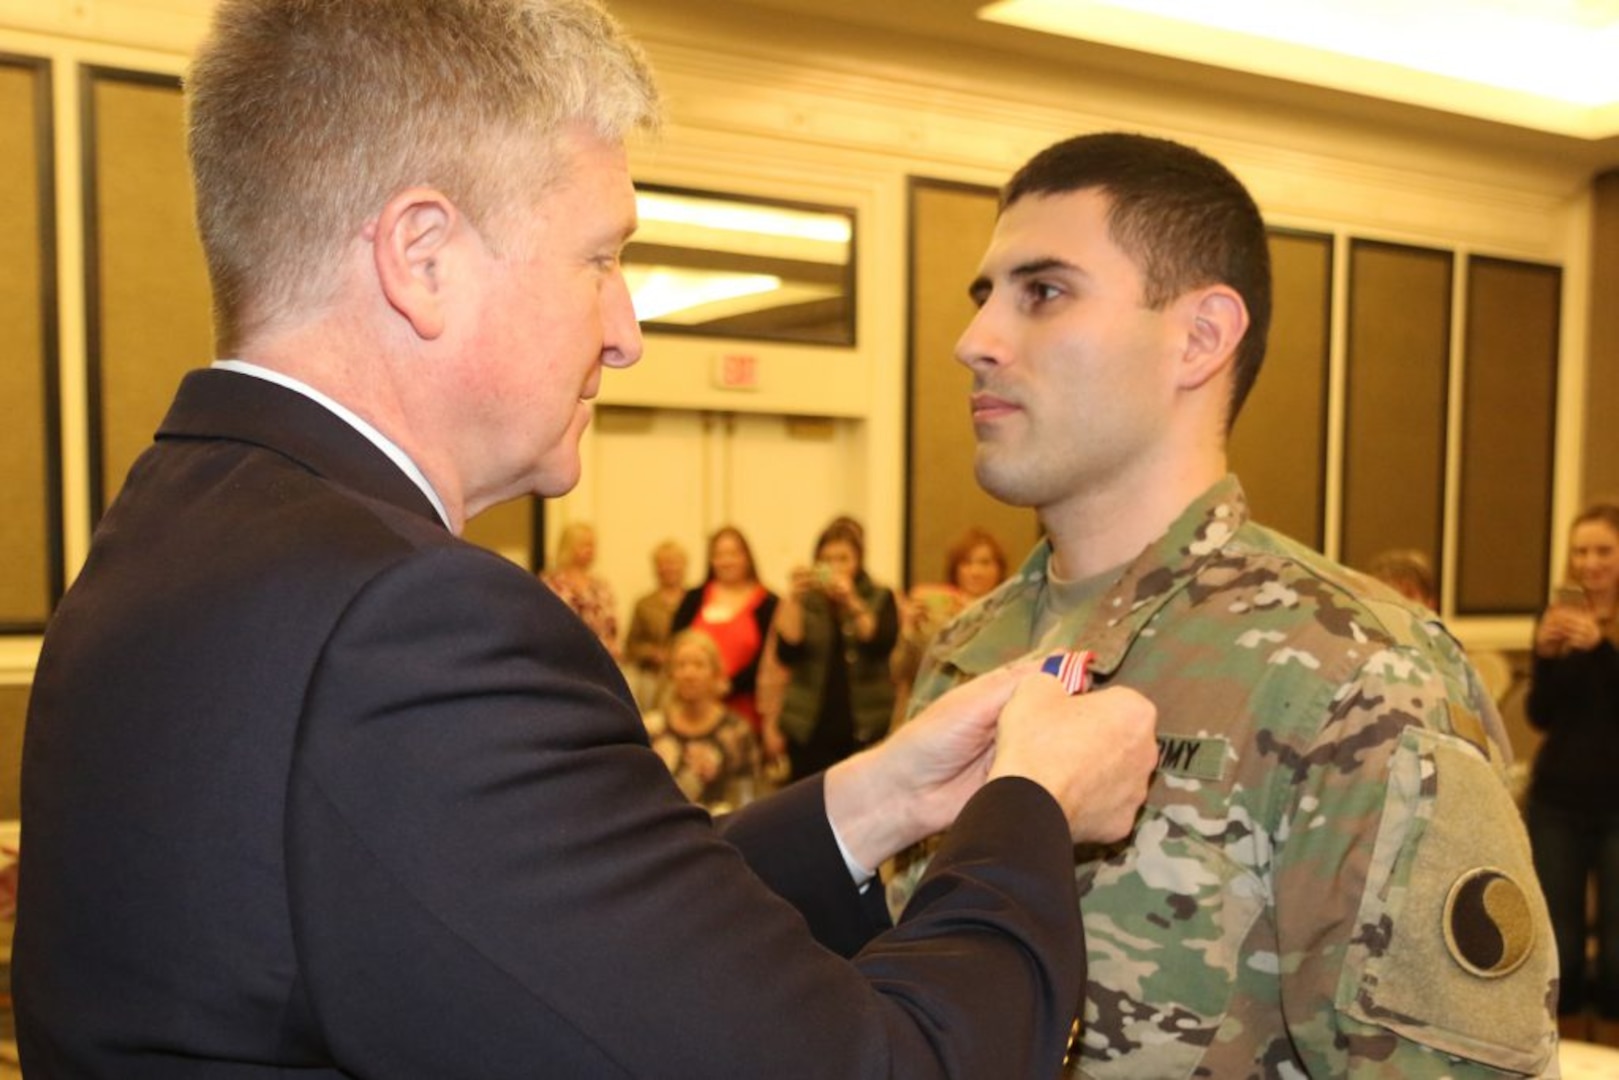 Sec. Moran recognizes Va. Guard federal active duty service